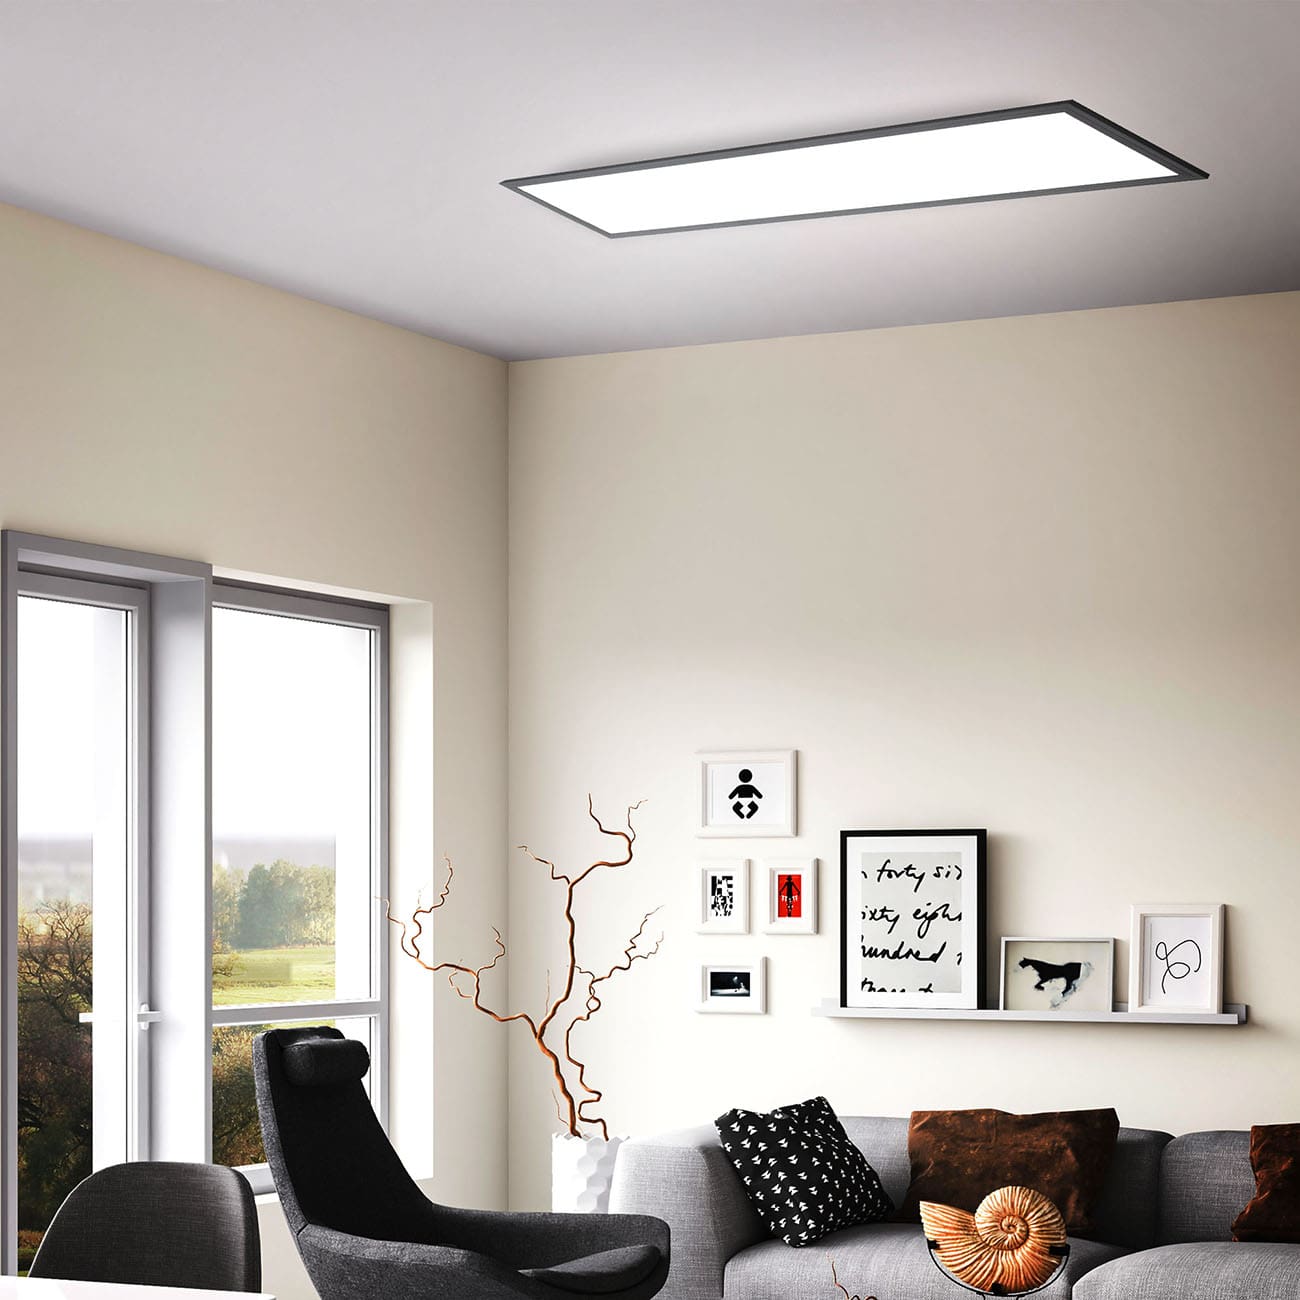 LED Decken-Panel flach - 100x25cm - Deckenleuchte 230V 22W 2200lm neutralweiße Lichtfarbe 4000K Deckenlampe Büro Küche | schwarz - 5